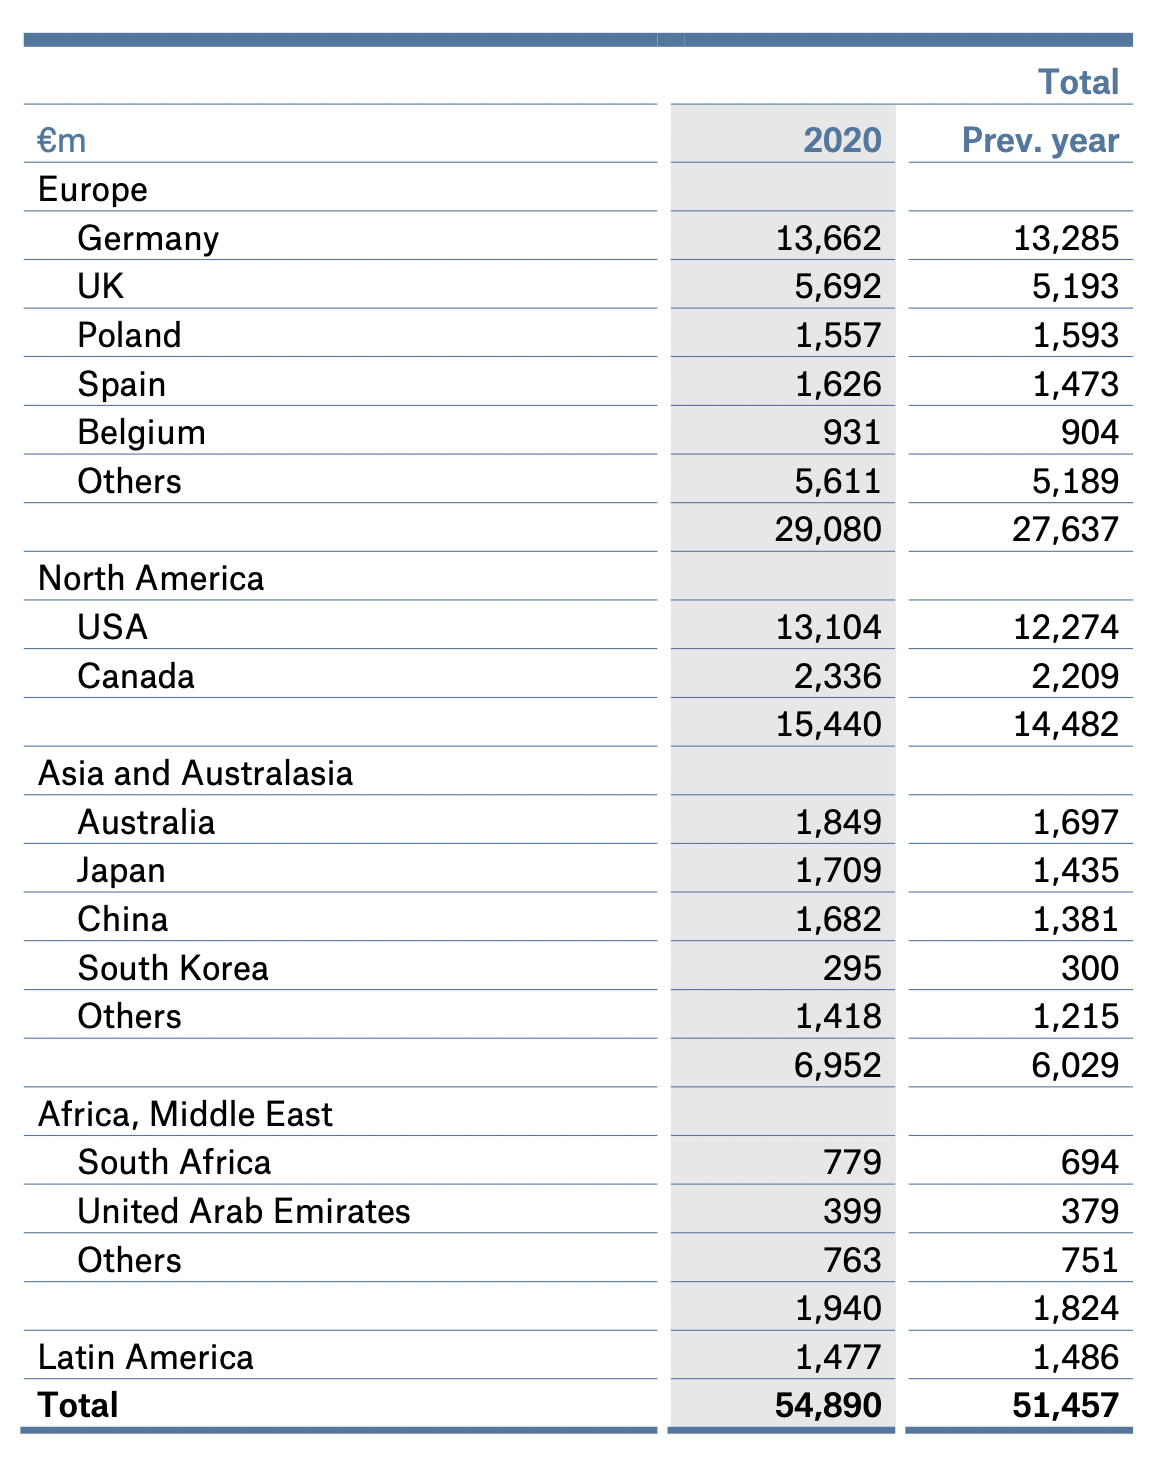 Страховые взносы по странам и регионам в миллионах евро. Источник: годовой отчет компании, стр. 147 (149)